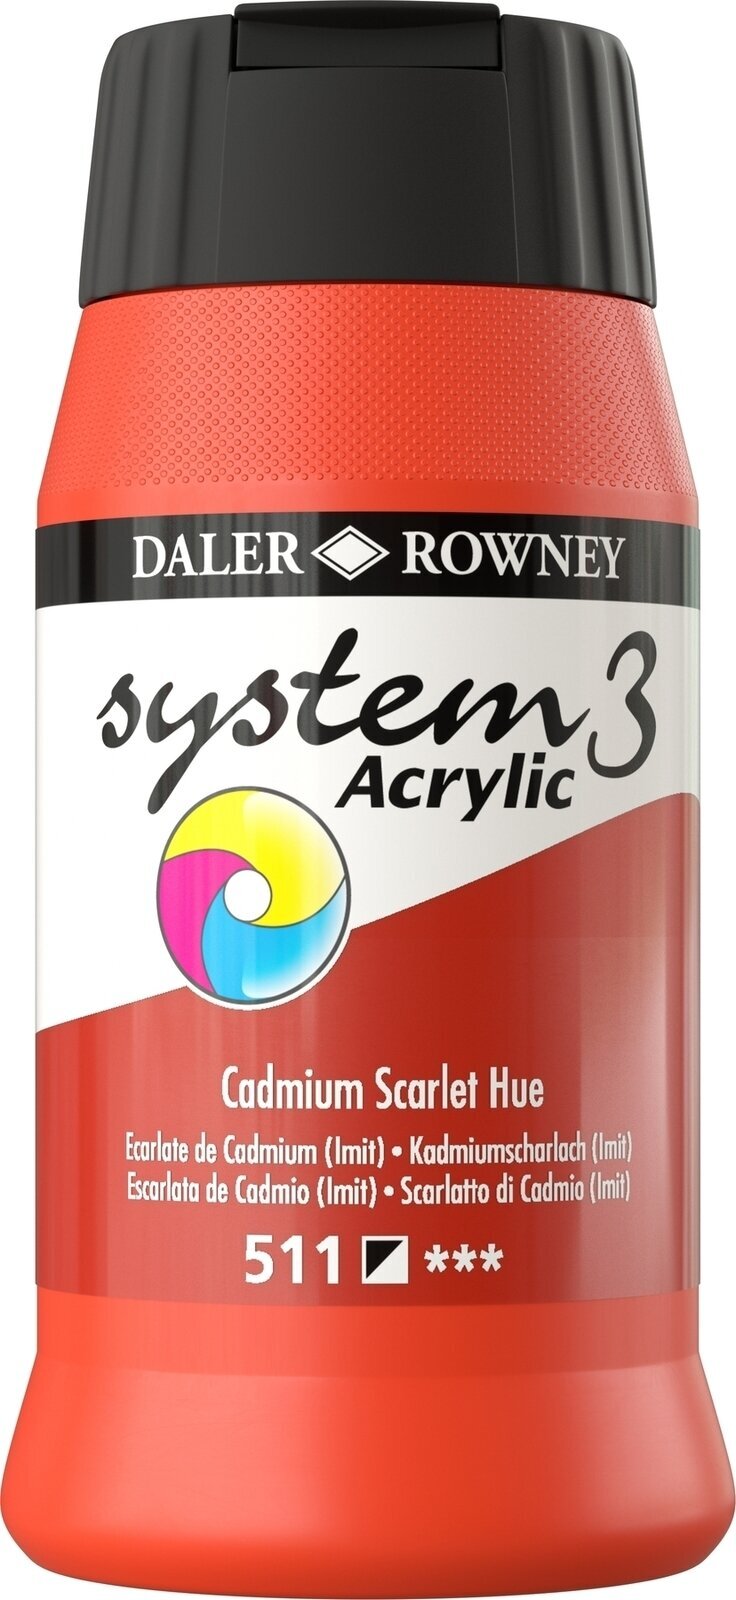 Culoare acrilică Daler Rowney System3 Vopsea acrilică Cadmium Scarlet Hue 500 ml 1 buc